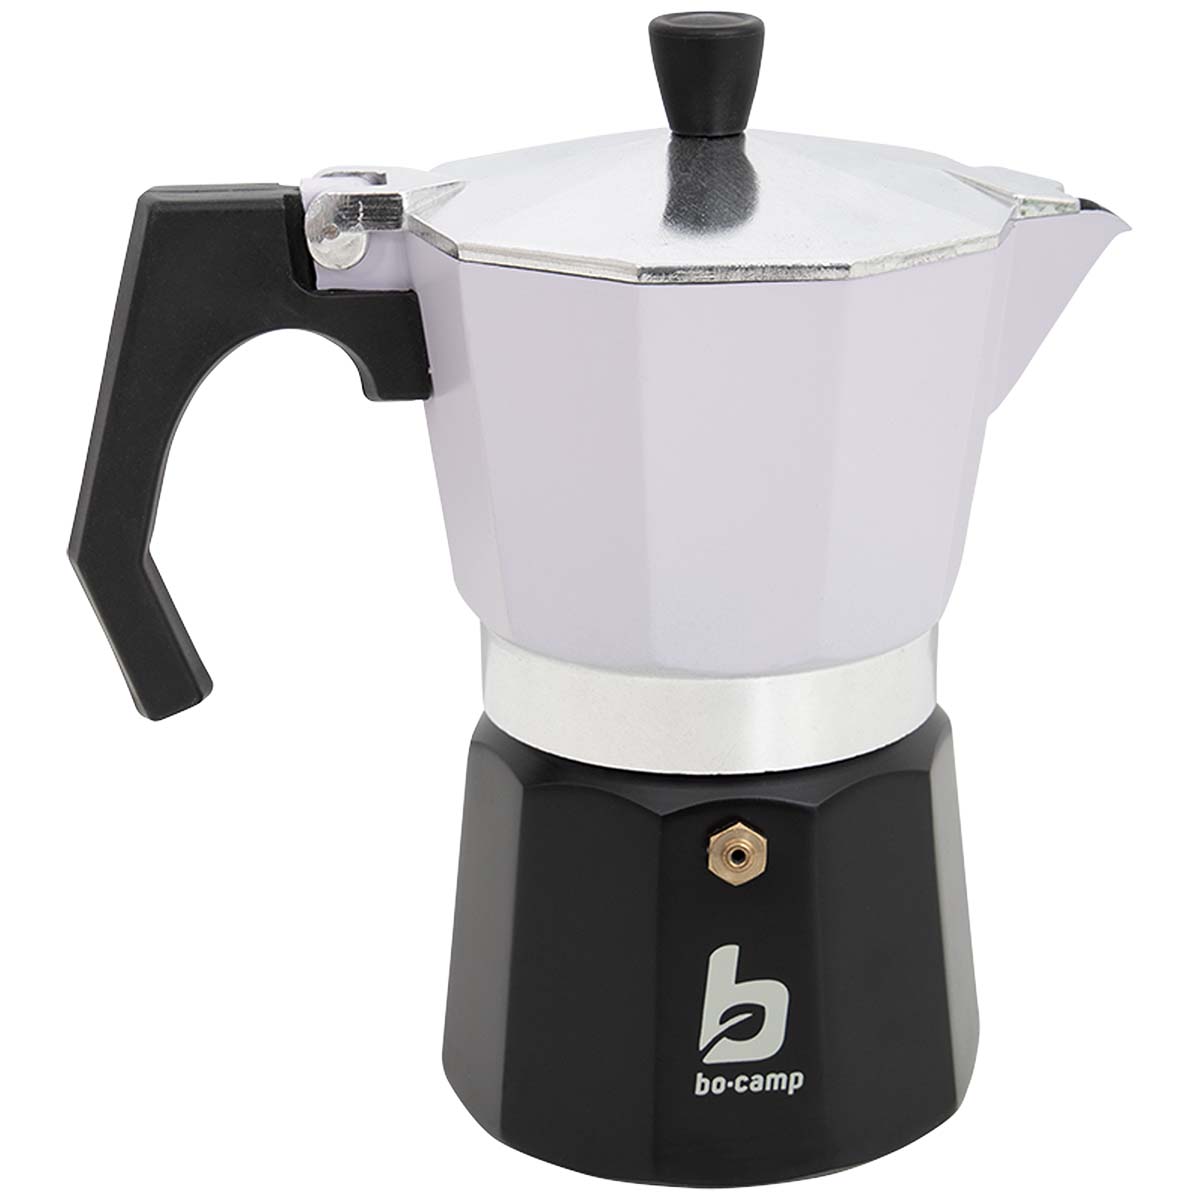 2200526 Een hippe aluminium koffiezetter met een kleurrijke look. Deze espresso maker is goed voor 6 kopjes koffie. Met deze percolator kan er binnen enkele minuten een kop koffie worden gezet. Vul het onderstel met water en daarboven in het houdertje komt het koffiepoeder. Wanneer het water aan de kook raakt, ontstaat er een heerlijke kop koffie. Bovendien voorzien van een handige schenktuit.